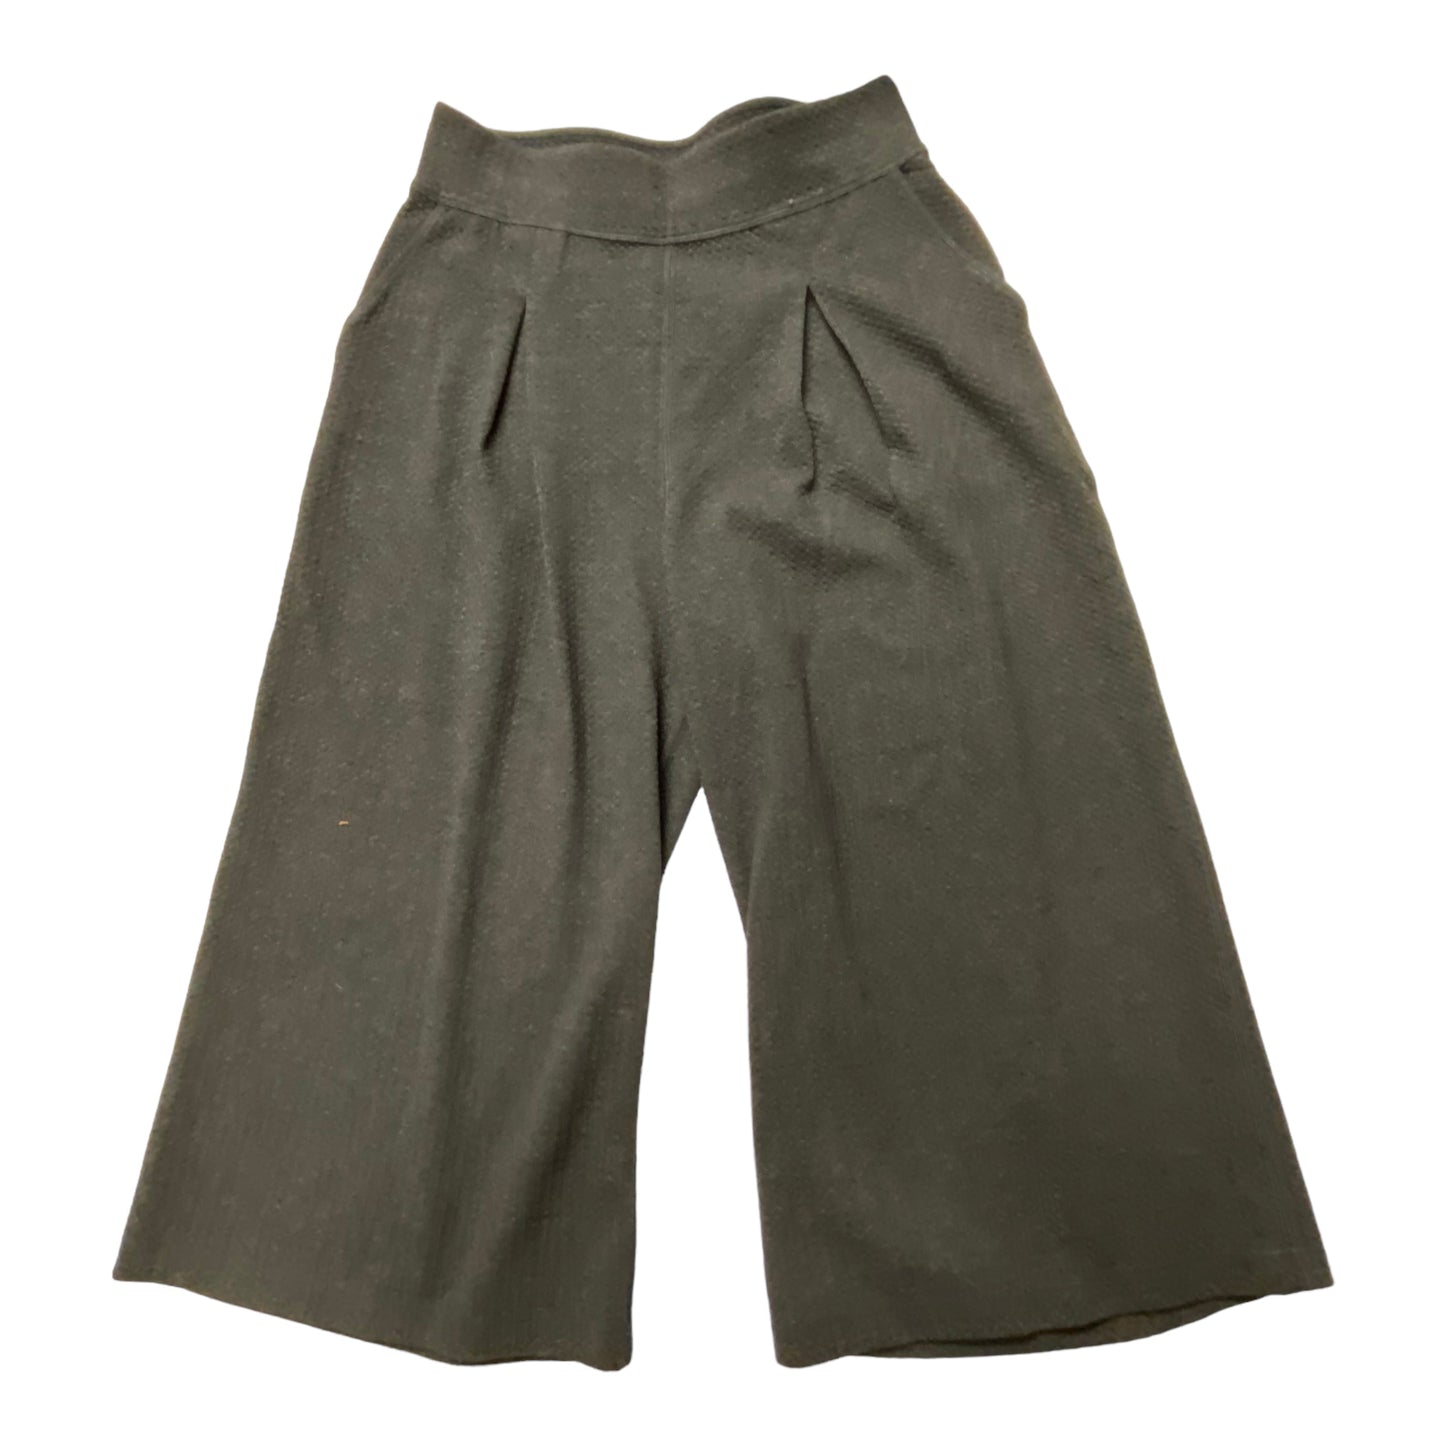 Grey Pants Cropped Lululemon, Size 8